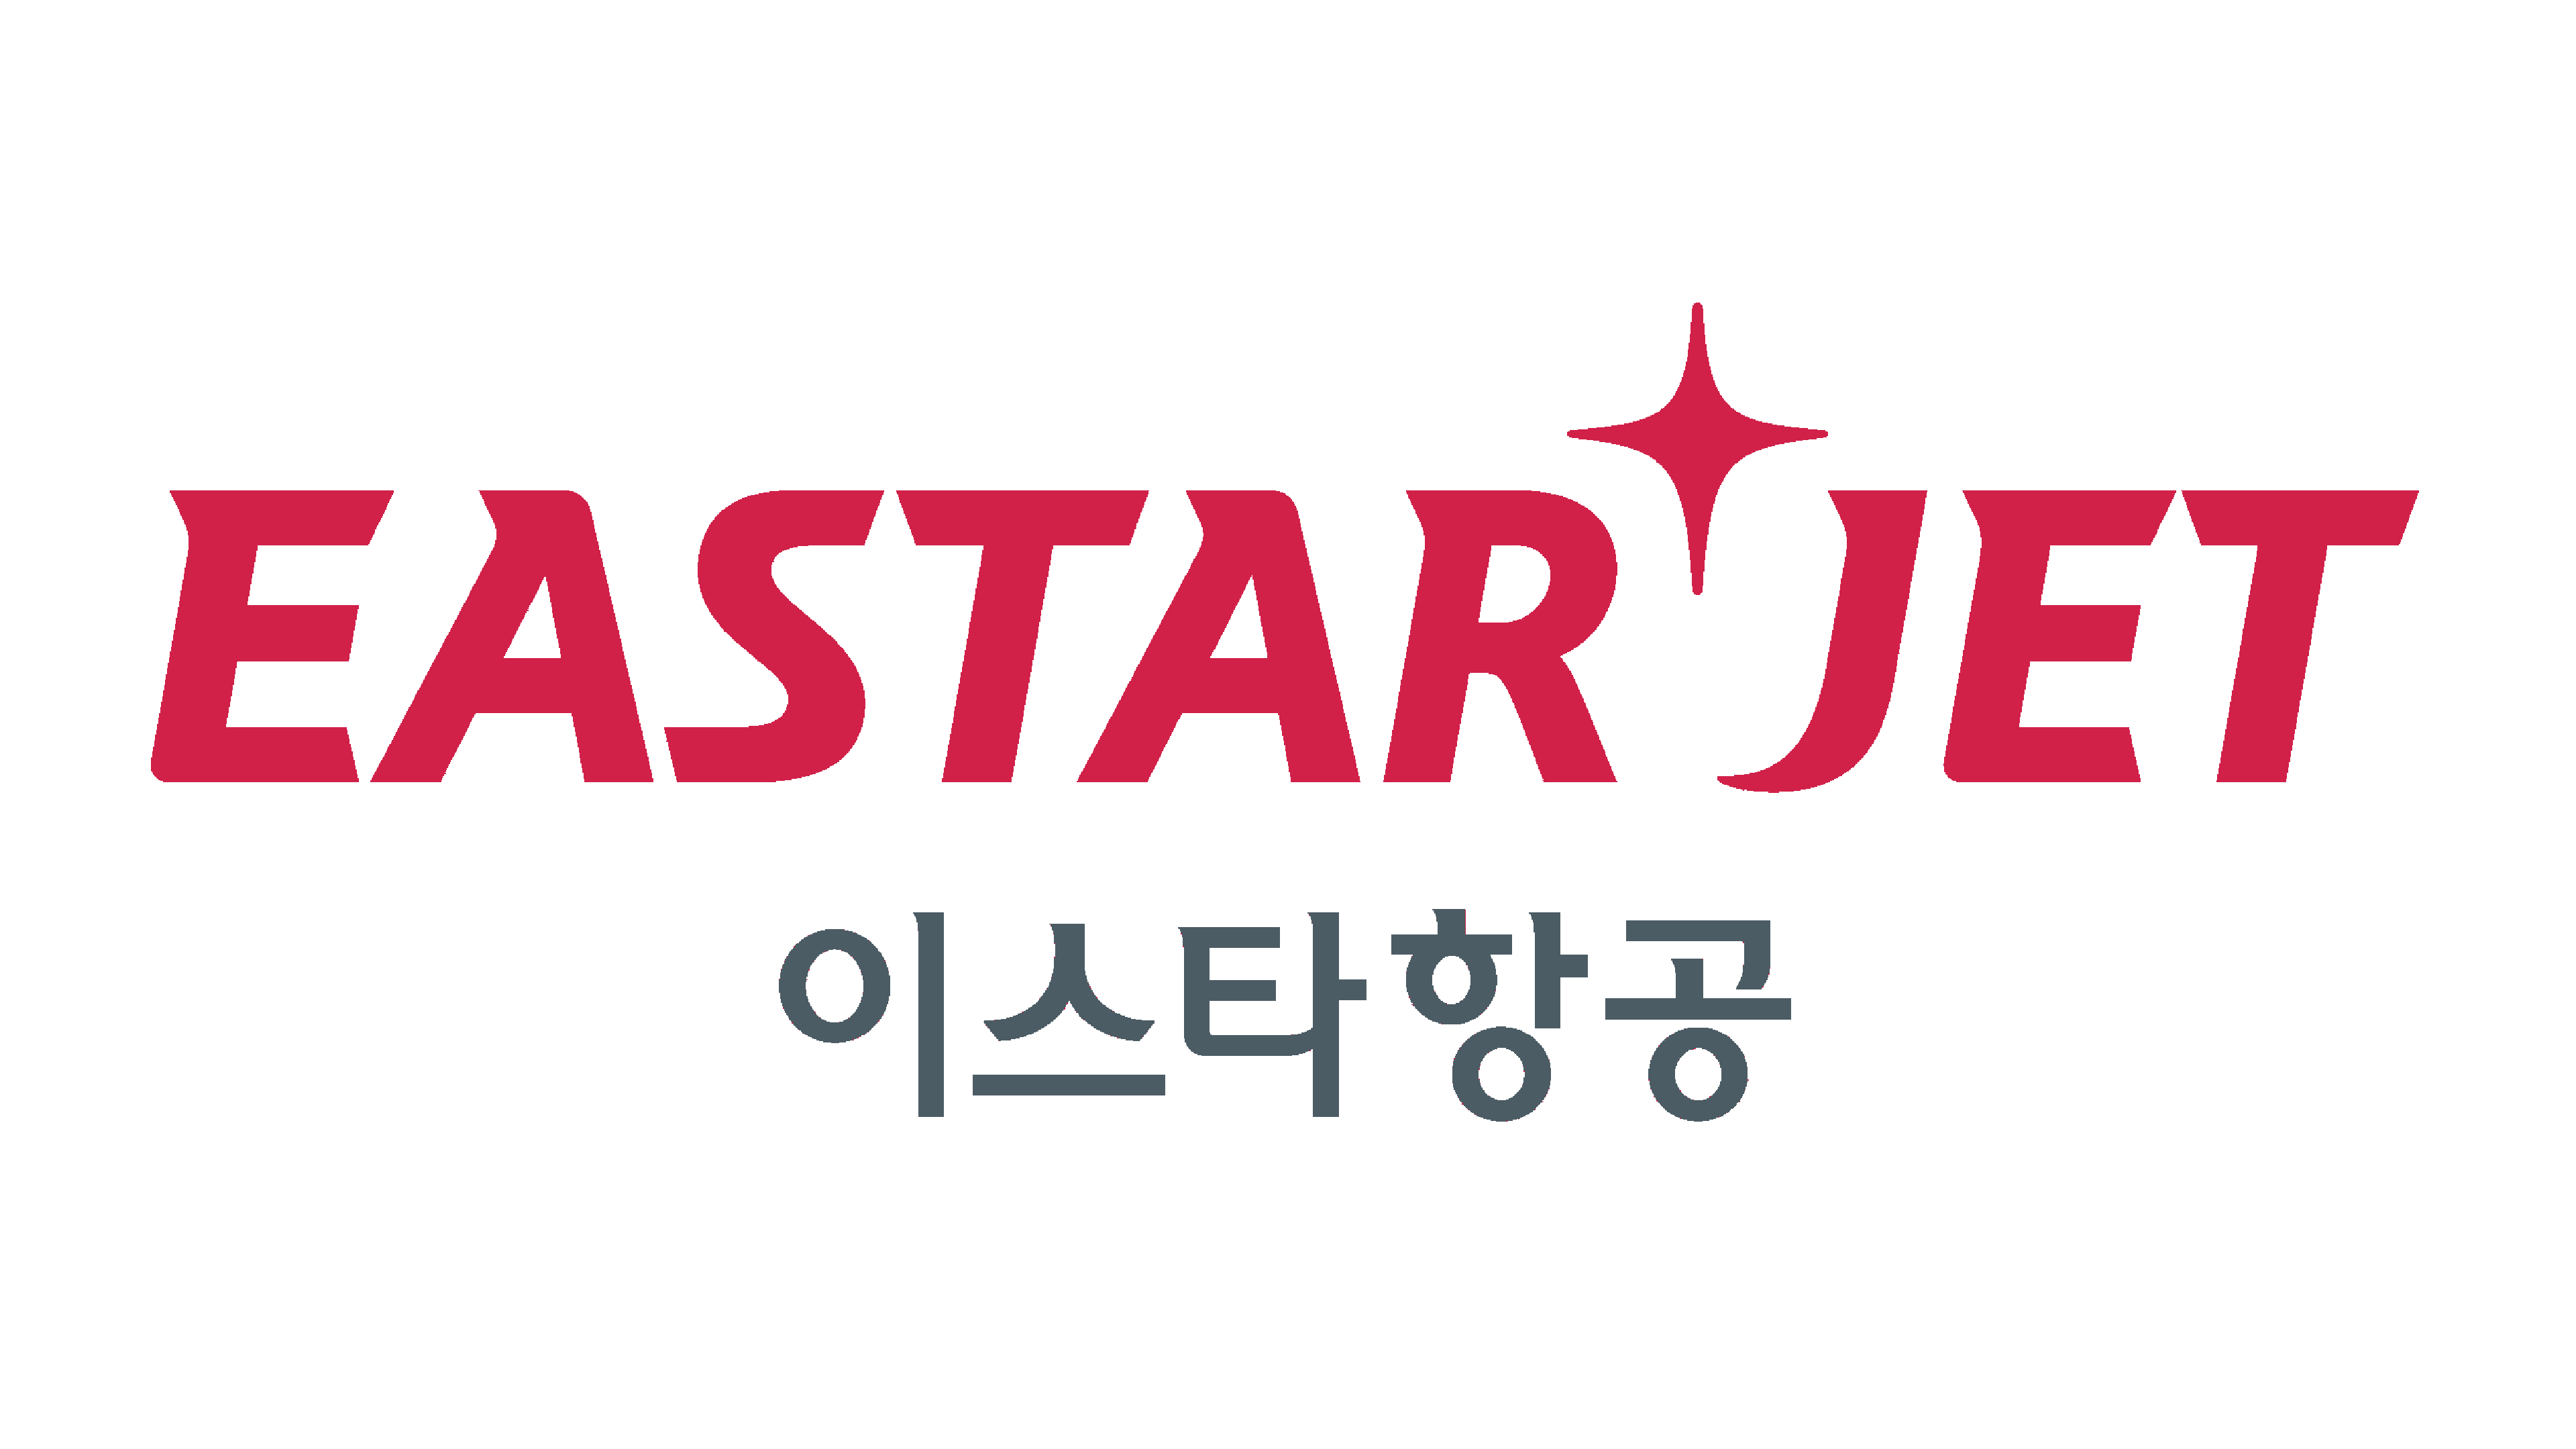 Eastar Jet Logo Logo